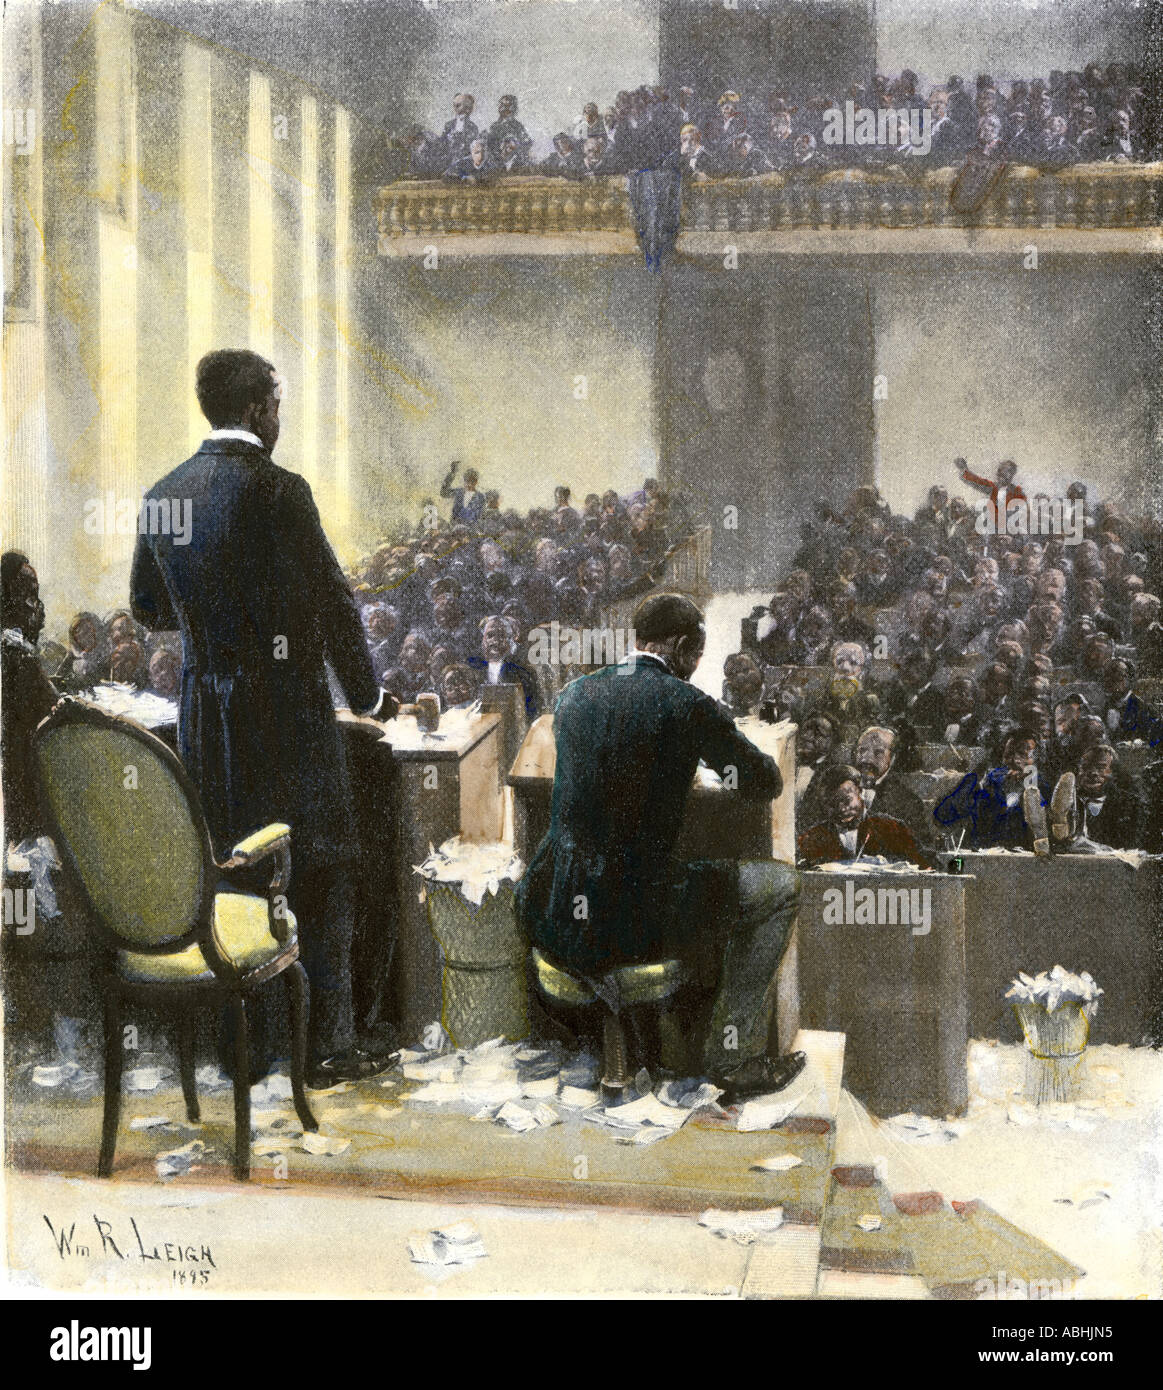 Südcarolina Gesetzgebung, einschließlich der afrikanischen amerikanischen Delegierten vorbei Mittel in Rechnung 1873. Handcolorierte halftone einer Abbildung Stockfoto